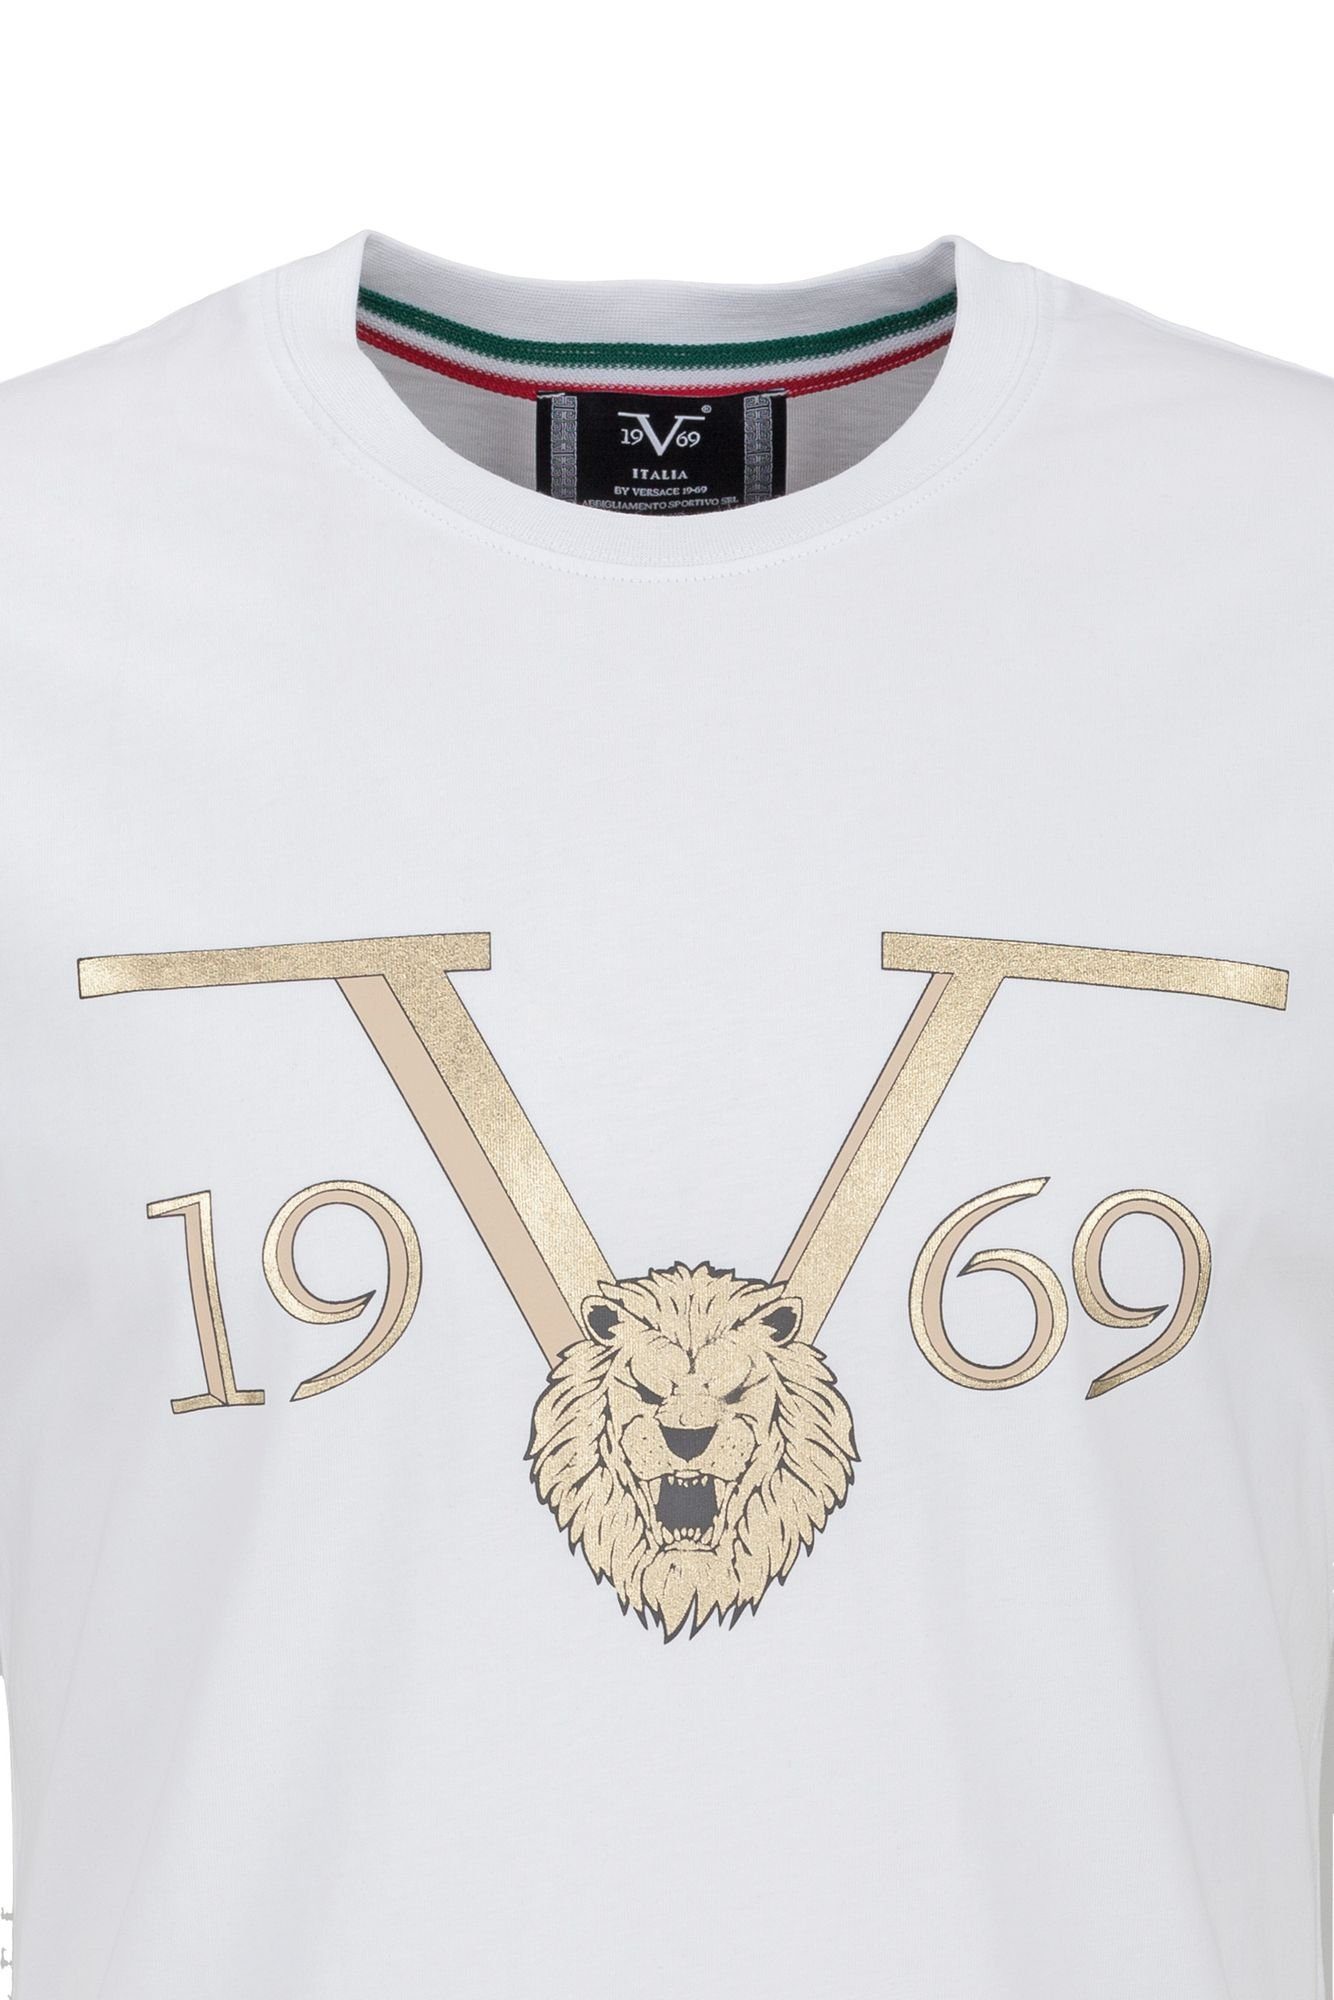 19V69 Italia by Versace T-Shirt Sportivo SRL by - Pedro Versace